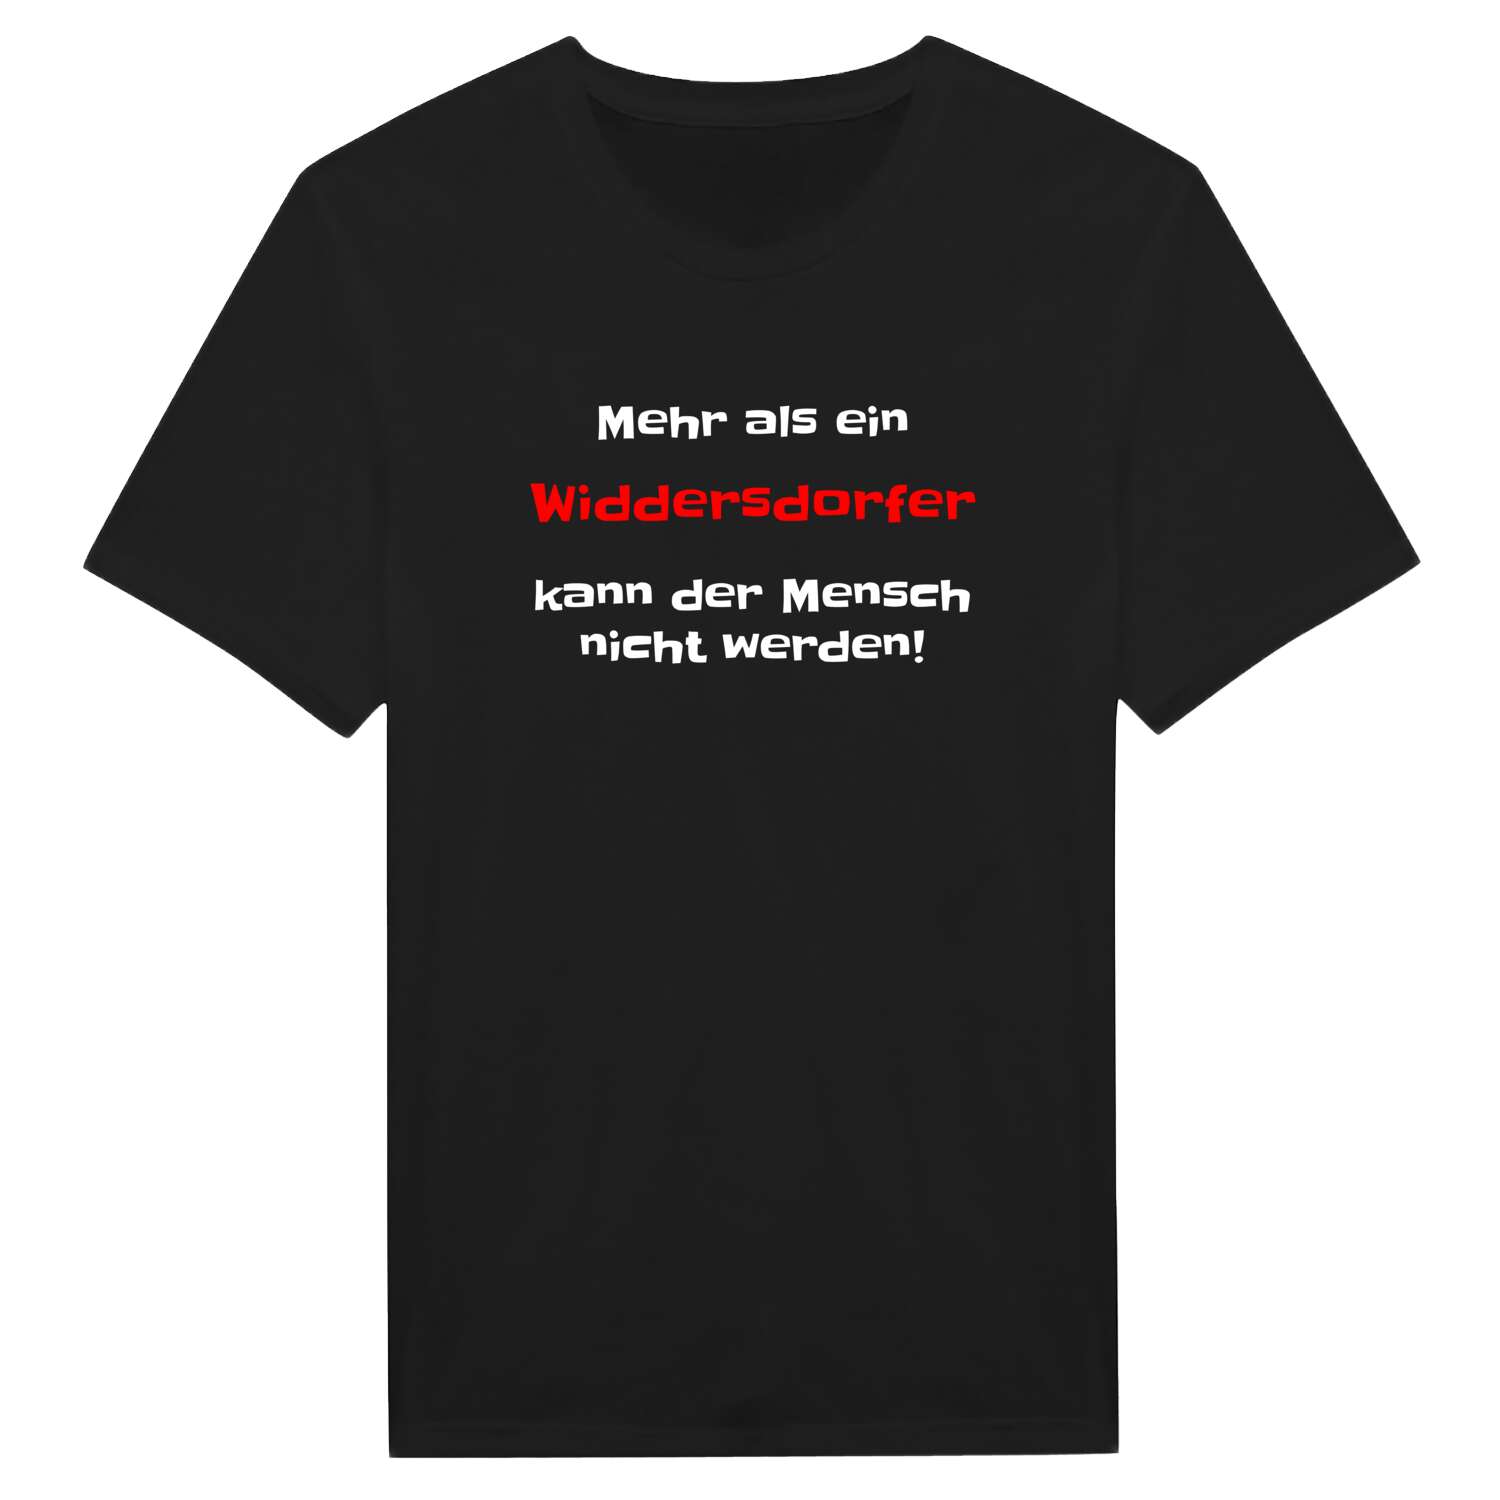 Widdersdorf T-Shirt »Mehr als ein«